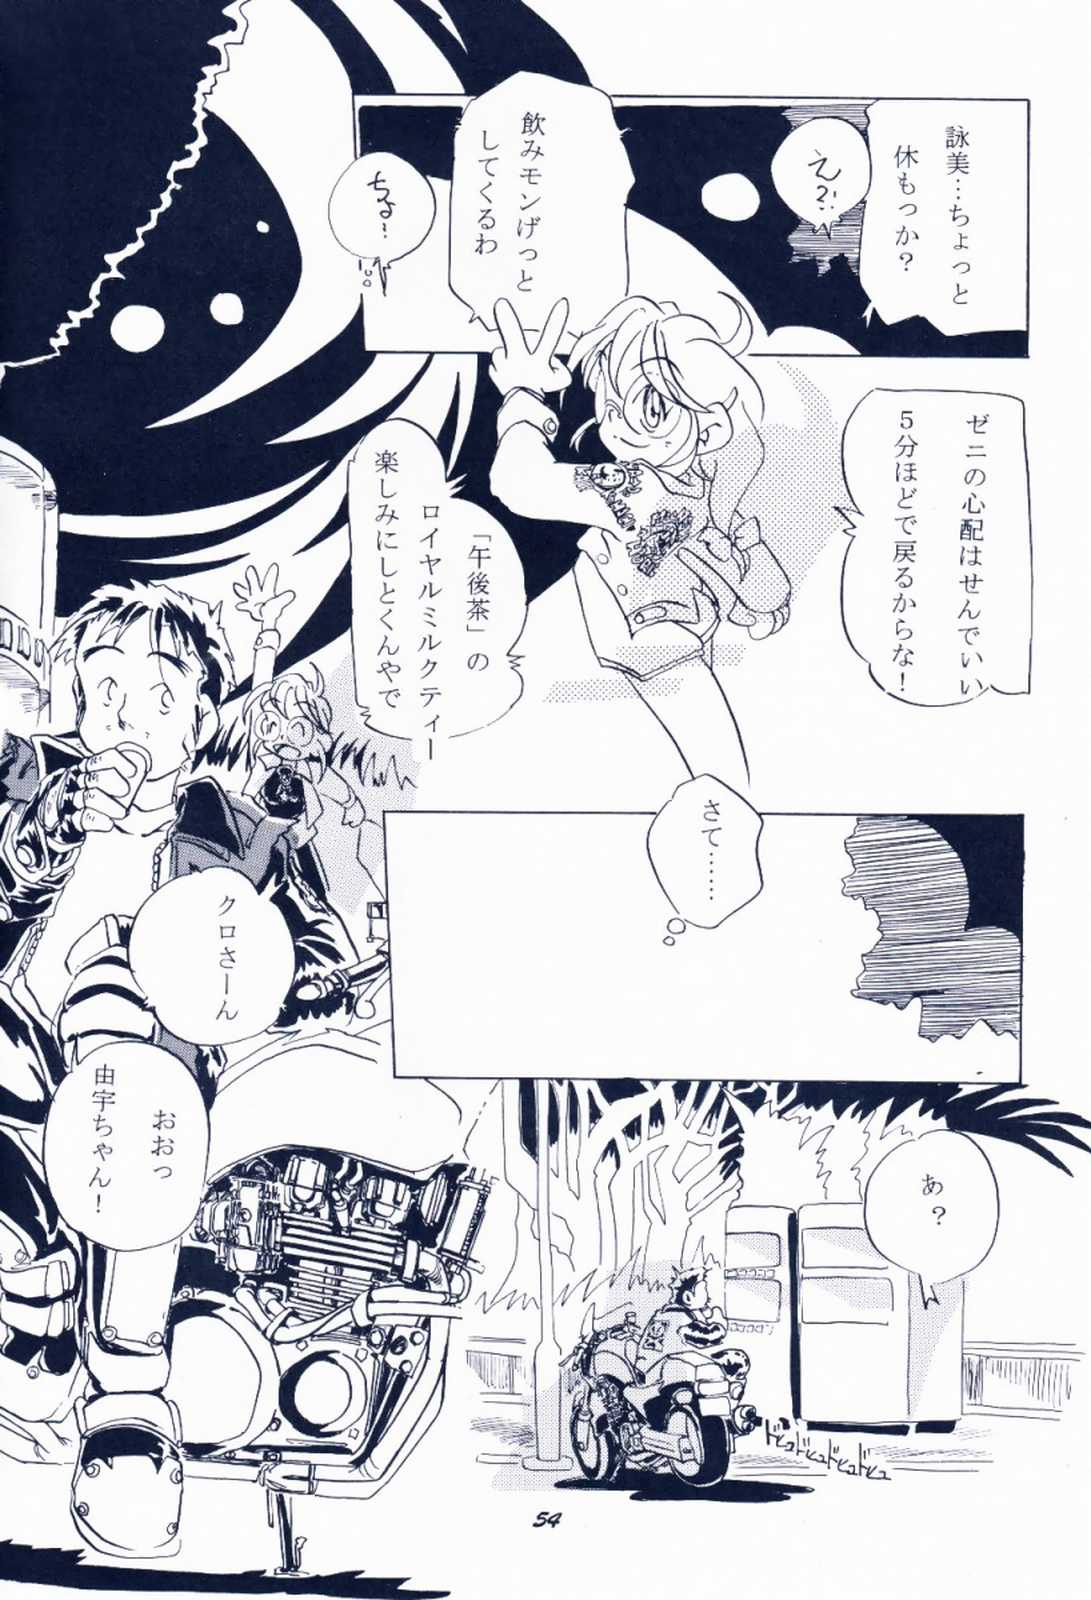 [Sibakarigumi (Shibahara Masao)] Maido Osawagaseshimasu 7 (Comic Party, Kanon) [芝刈組 (しば原まさを)] 毎度おさわがせします7 (こみっくパーティー, カノン)